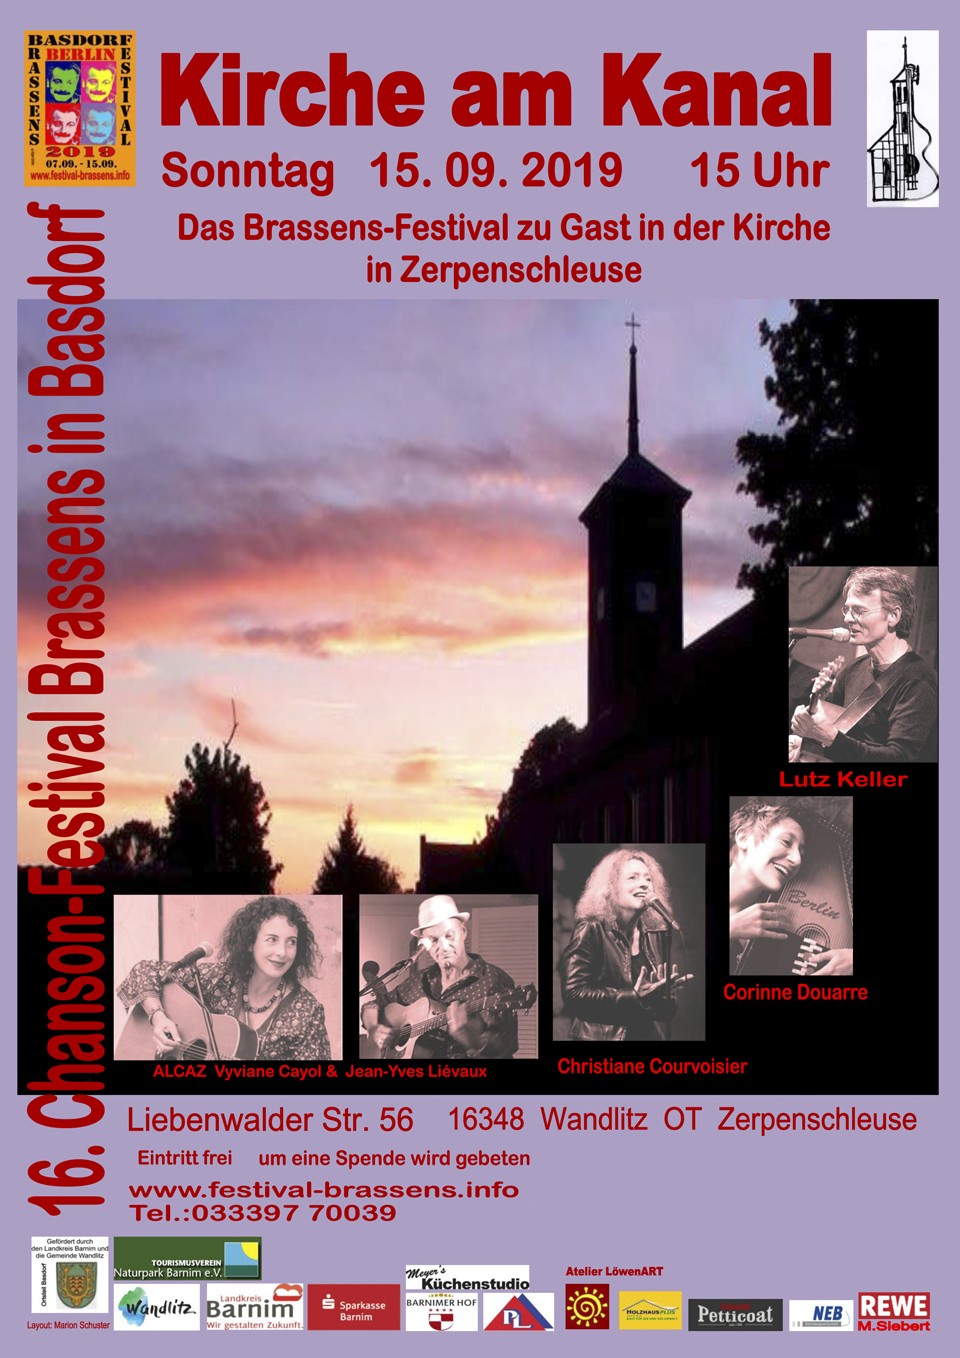 Basdorf Festival Brassens in Zerpenschleuse